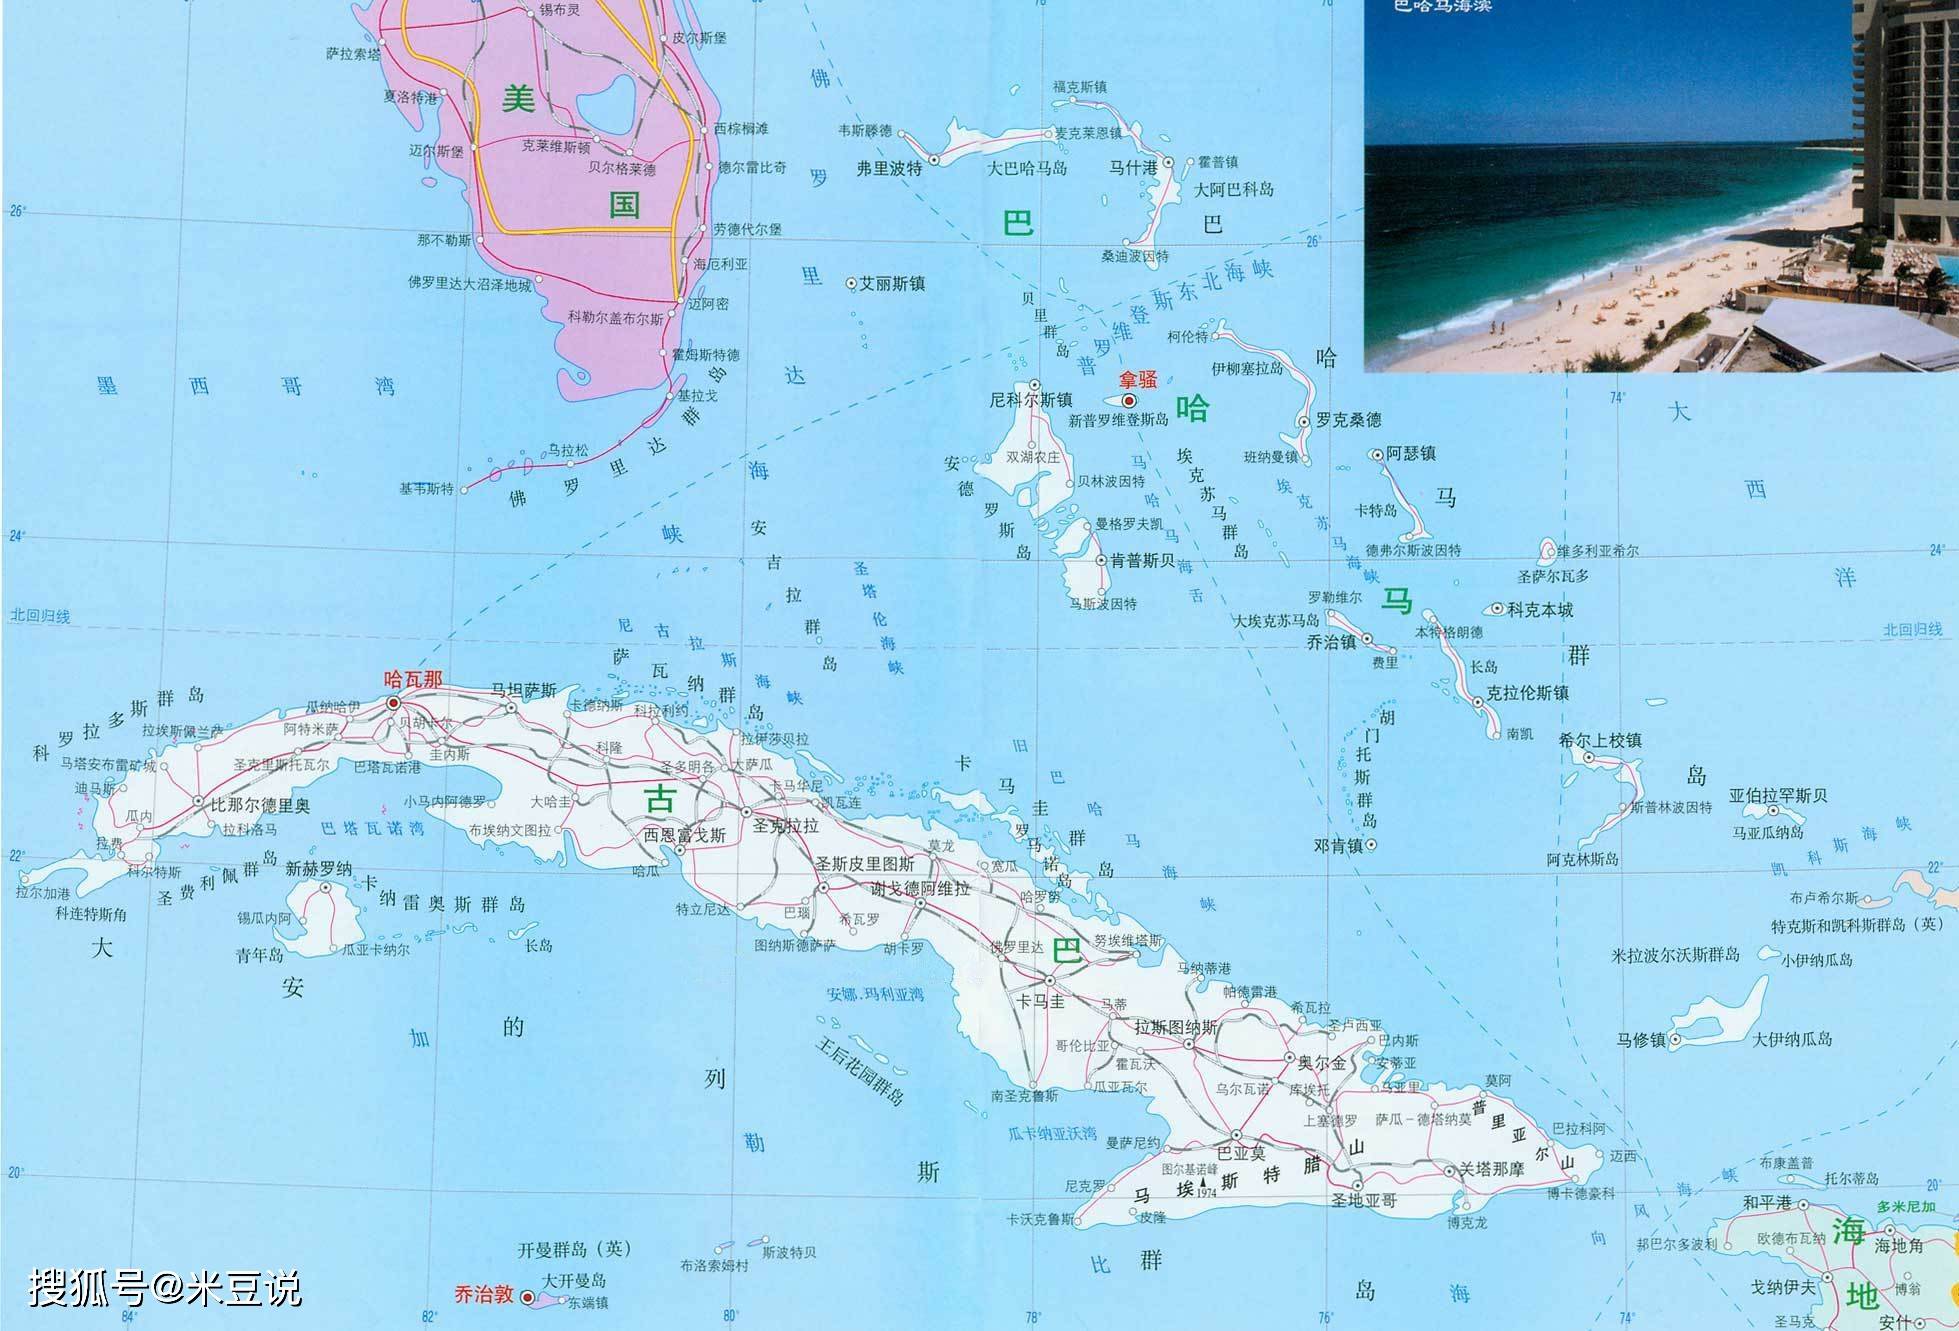 地缘视角看墨西哥湾对美国意味着什么?古巴为何惨遭封锁60多年?